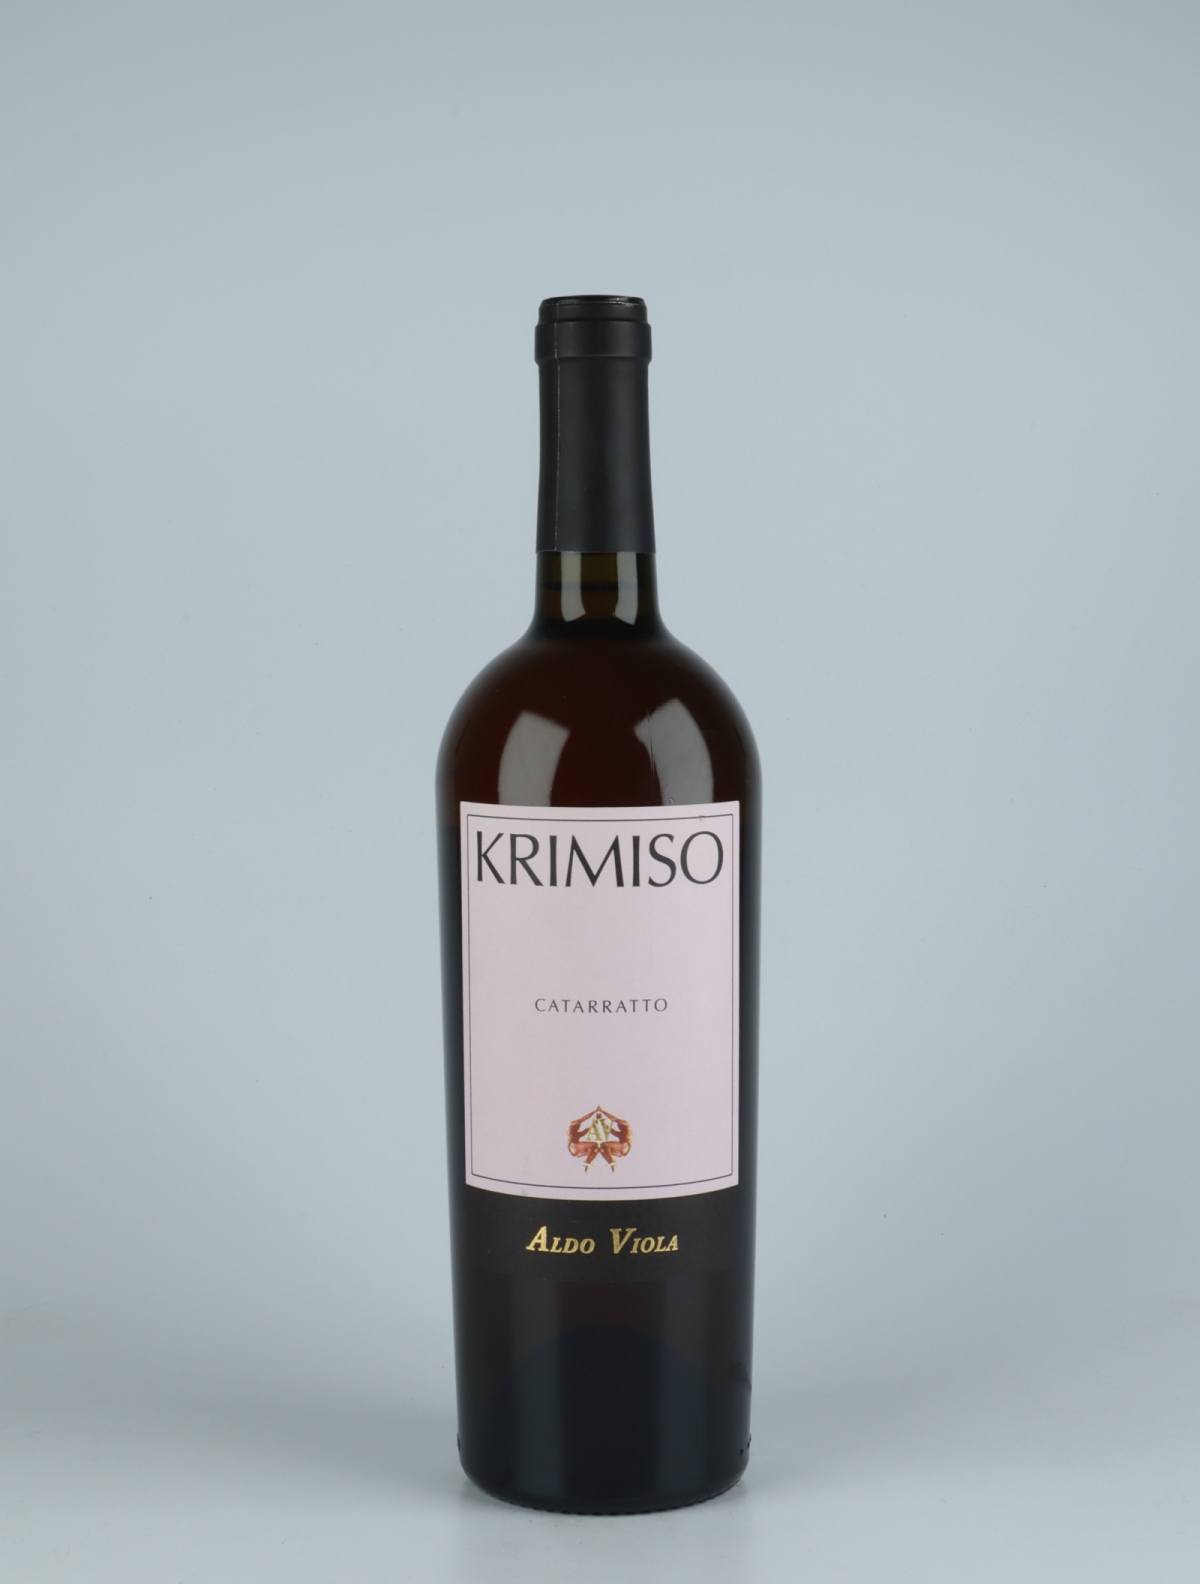 A bottle 2017 Krimiso Catarratto White wine from Aldo Viola, Sicily in Italy